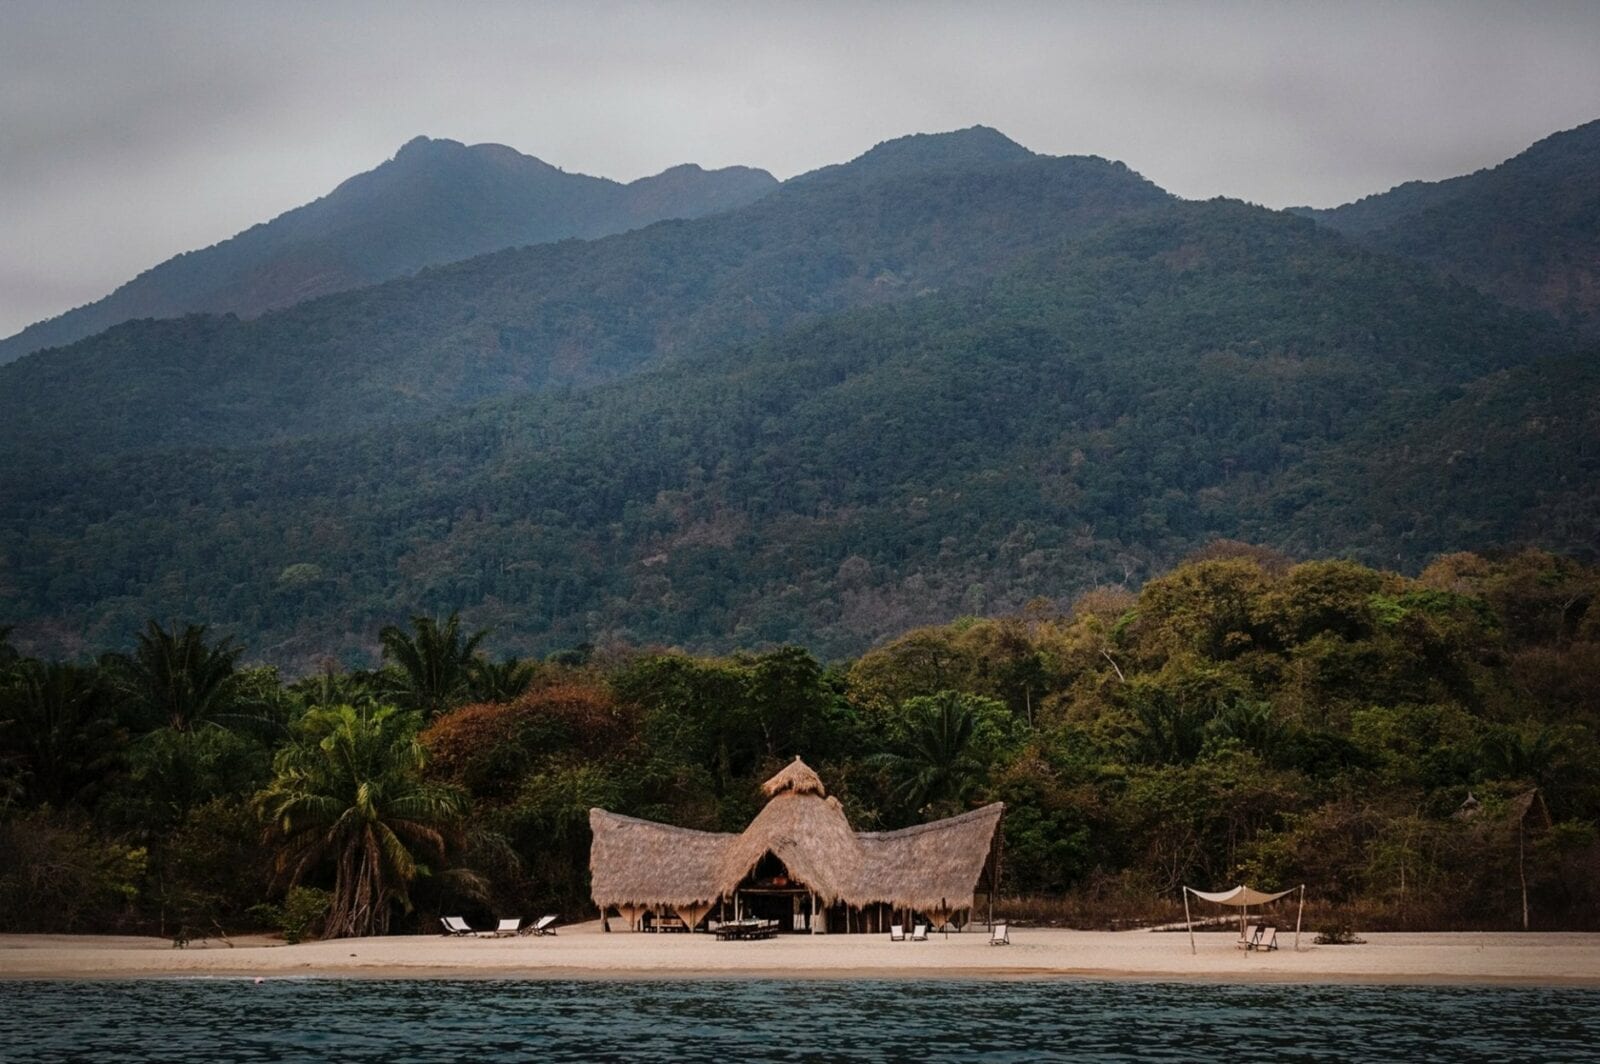 beach camp in tanzania overlooking the sea